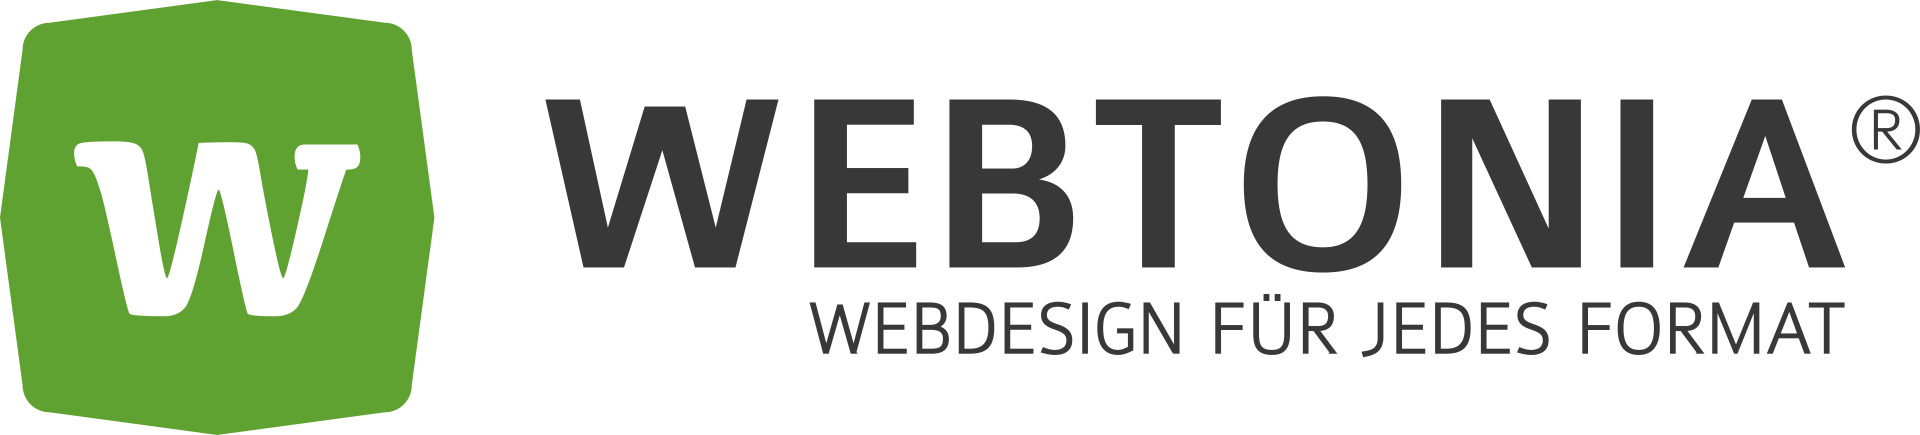 Webtonia GmbH – Webdesign für jedes Format